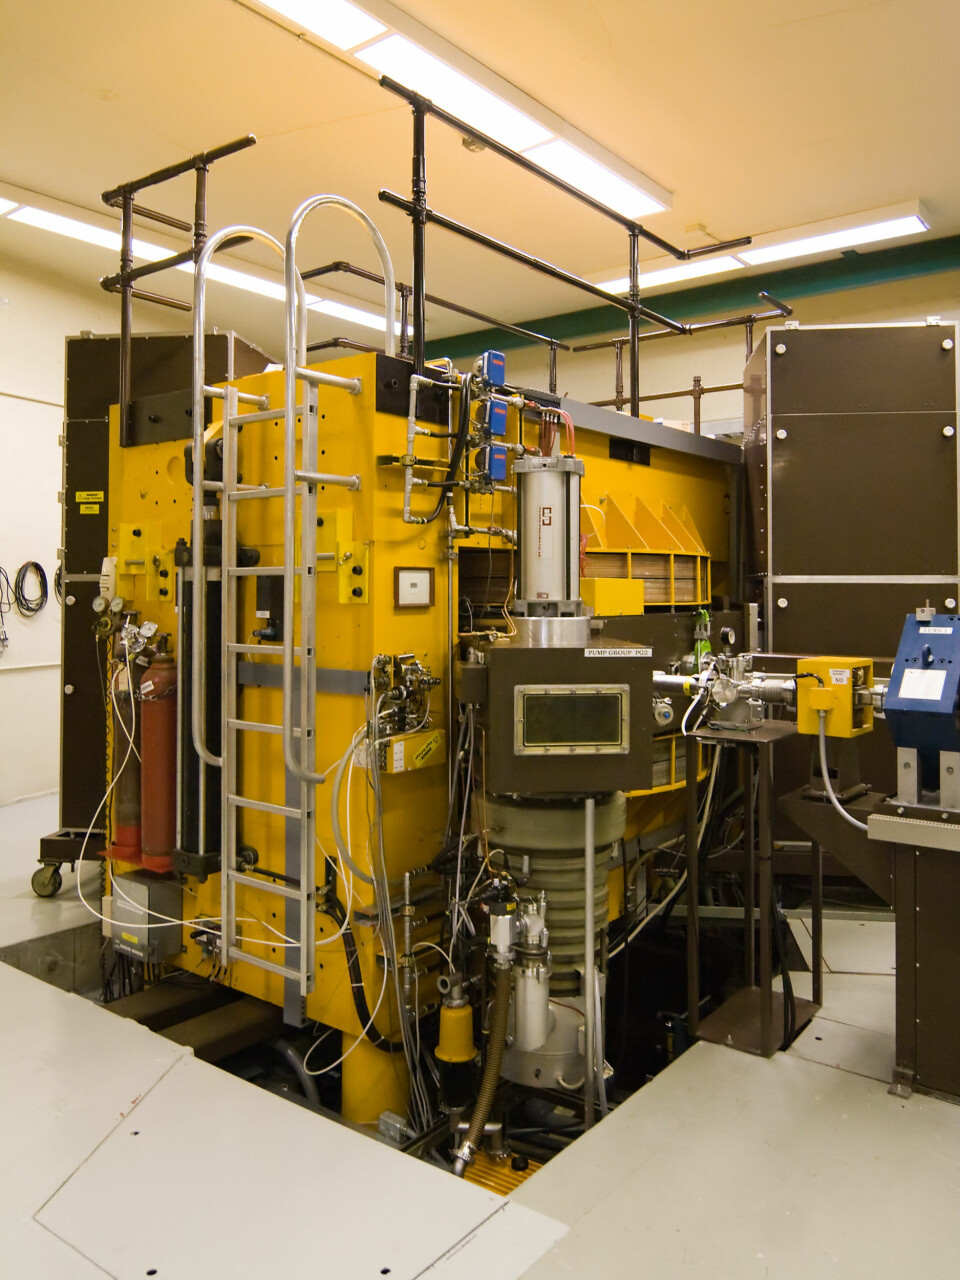 Moderne syklotron ved University of Washington. Syklotronen produserer en protonstråle som brukes til kreftbehandling. (Foto: Ikiwaner, Wikimedia Commons)